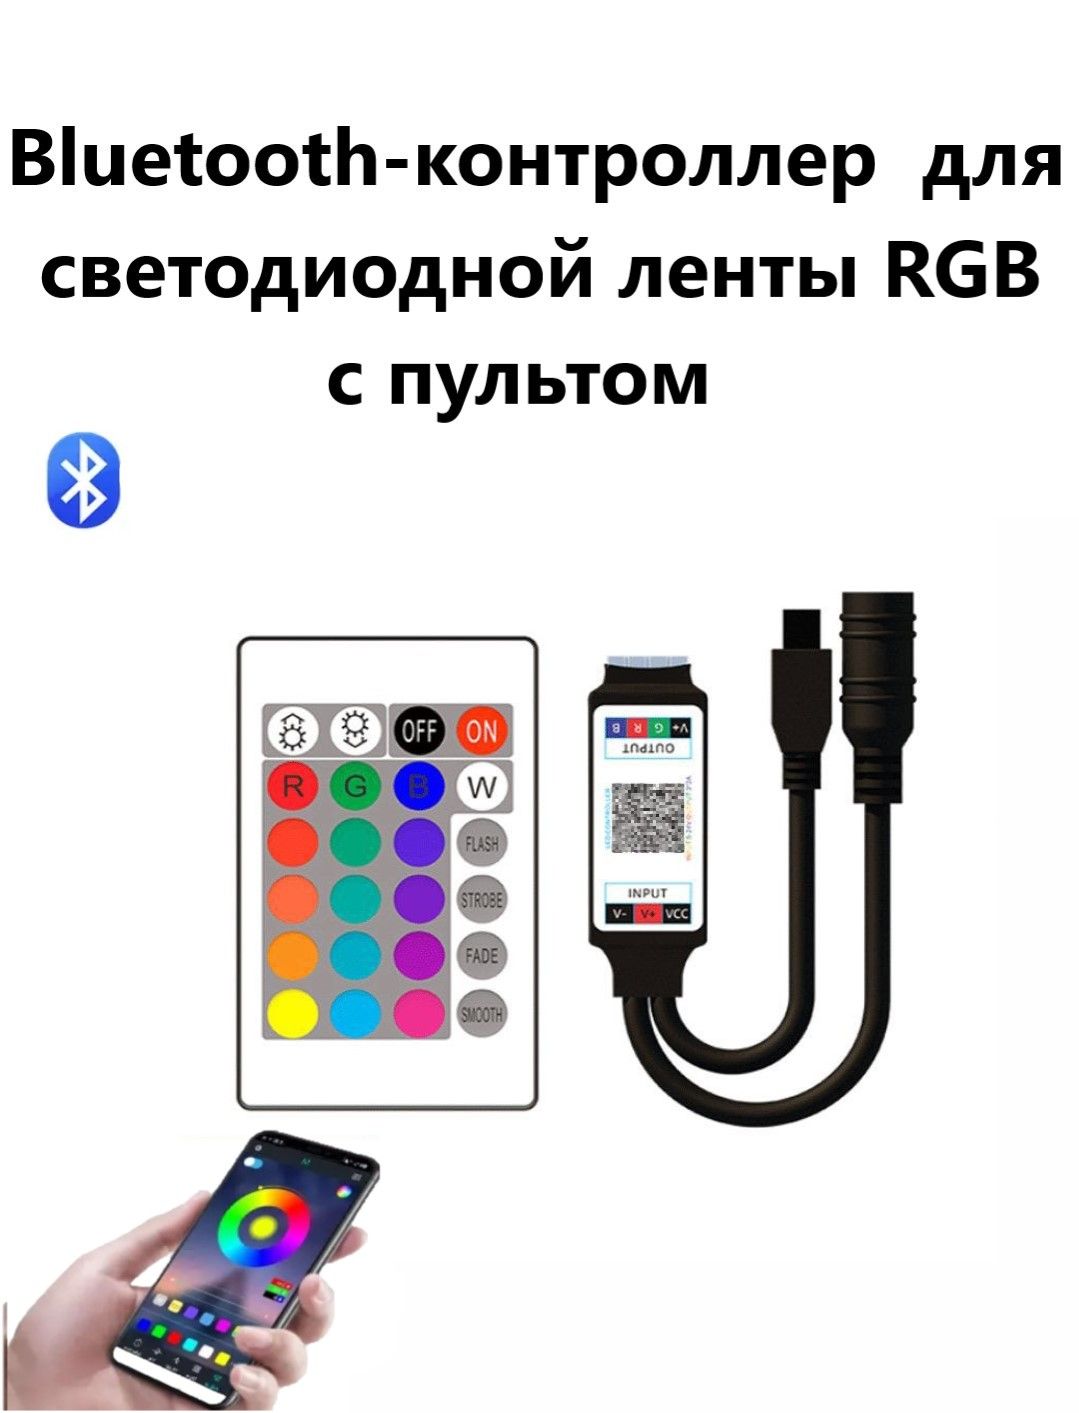 RGBконтроллердлясветодиоднойлентыcBluetoothипультомдляledленты